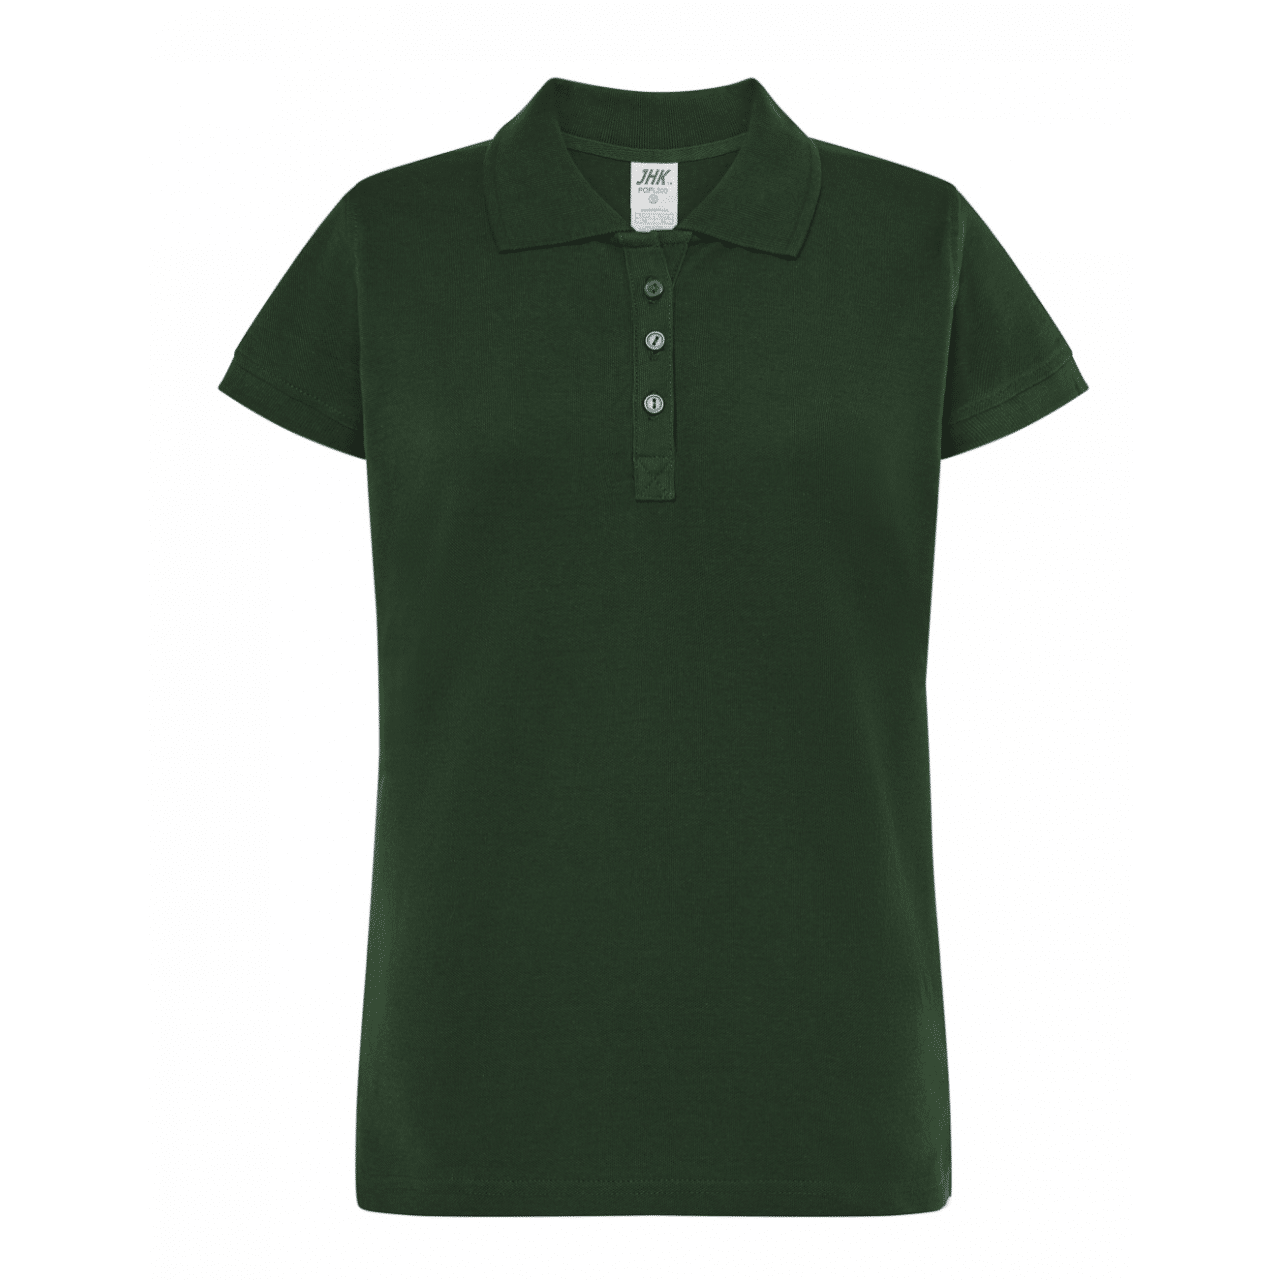 Koszulka Polo Damska – Krótki Rękaw